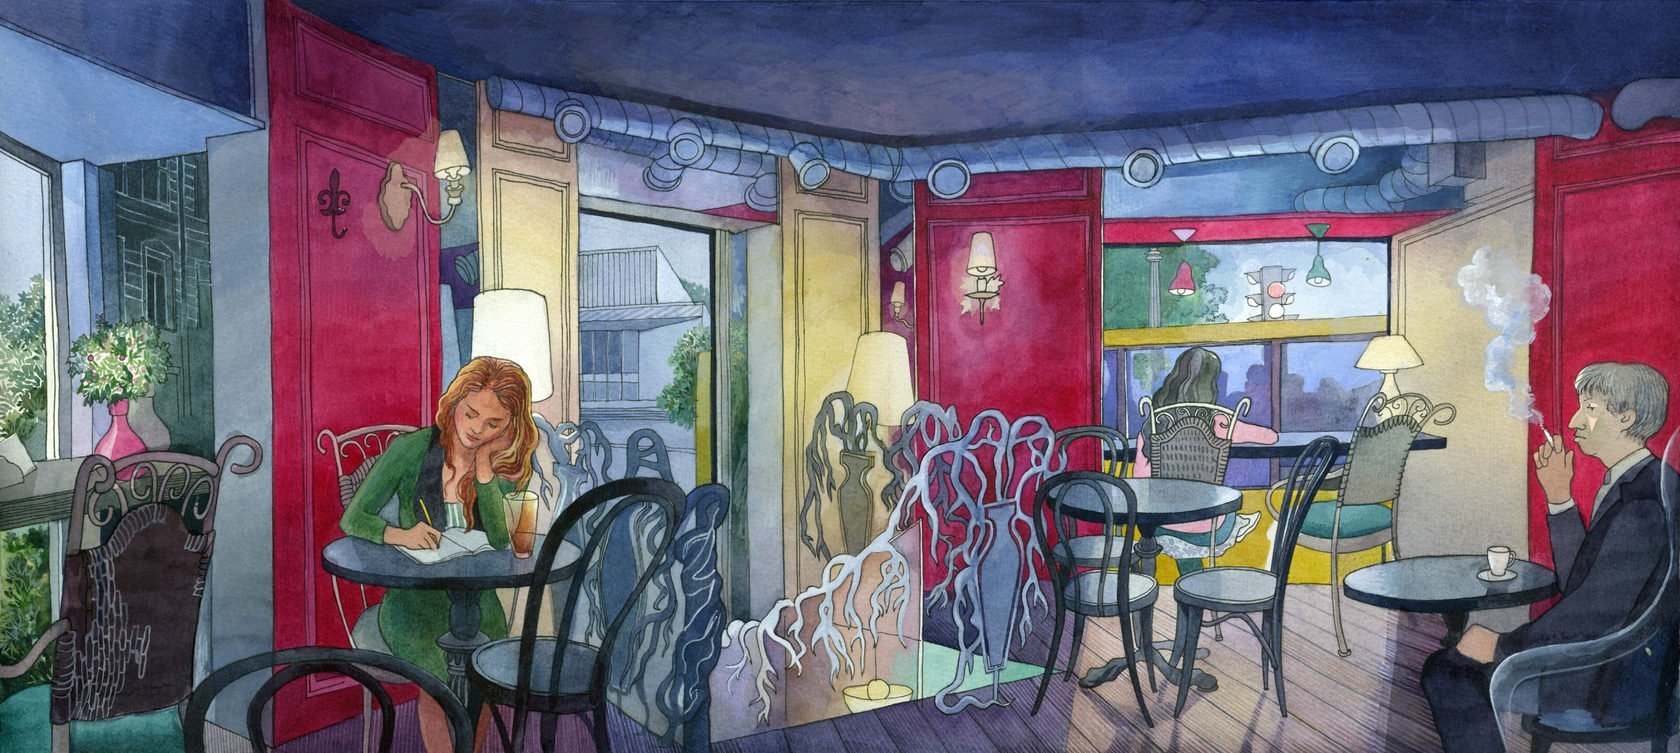 Живопись в интерьере кафе